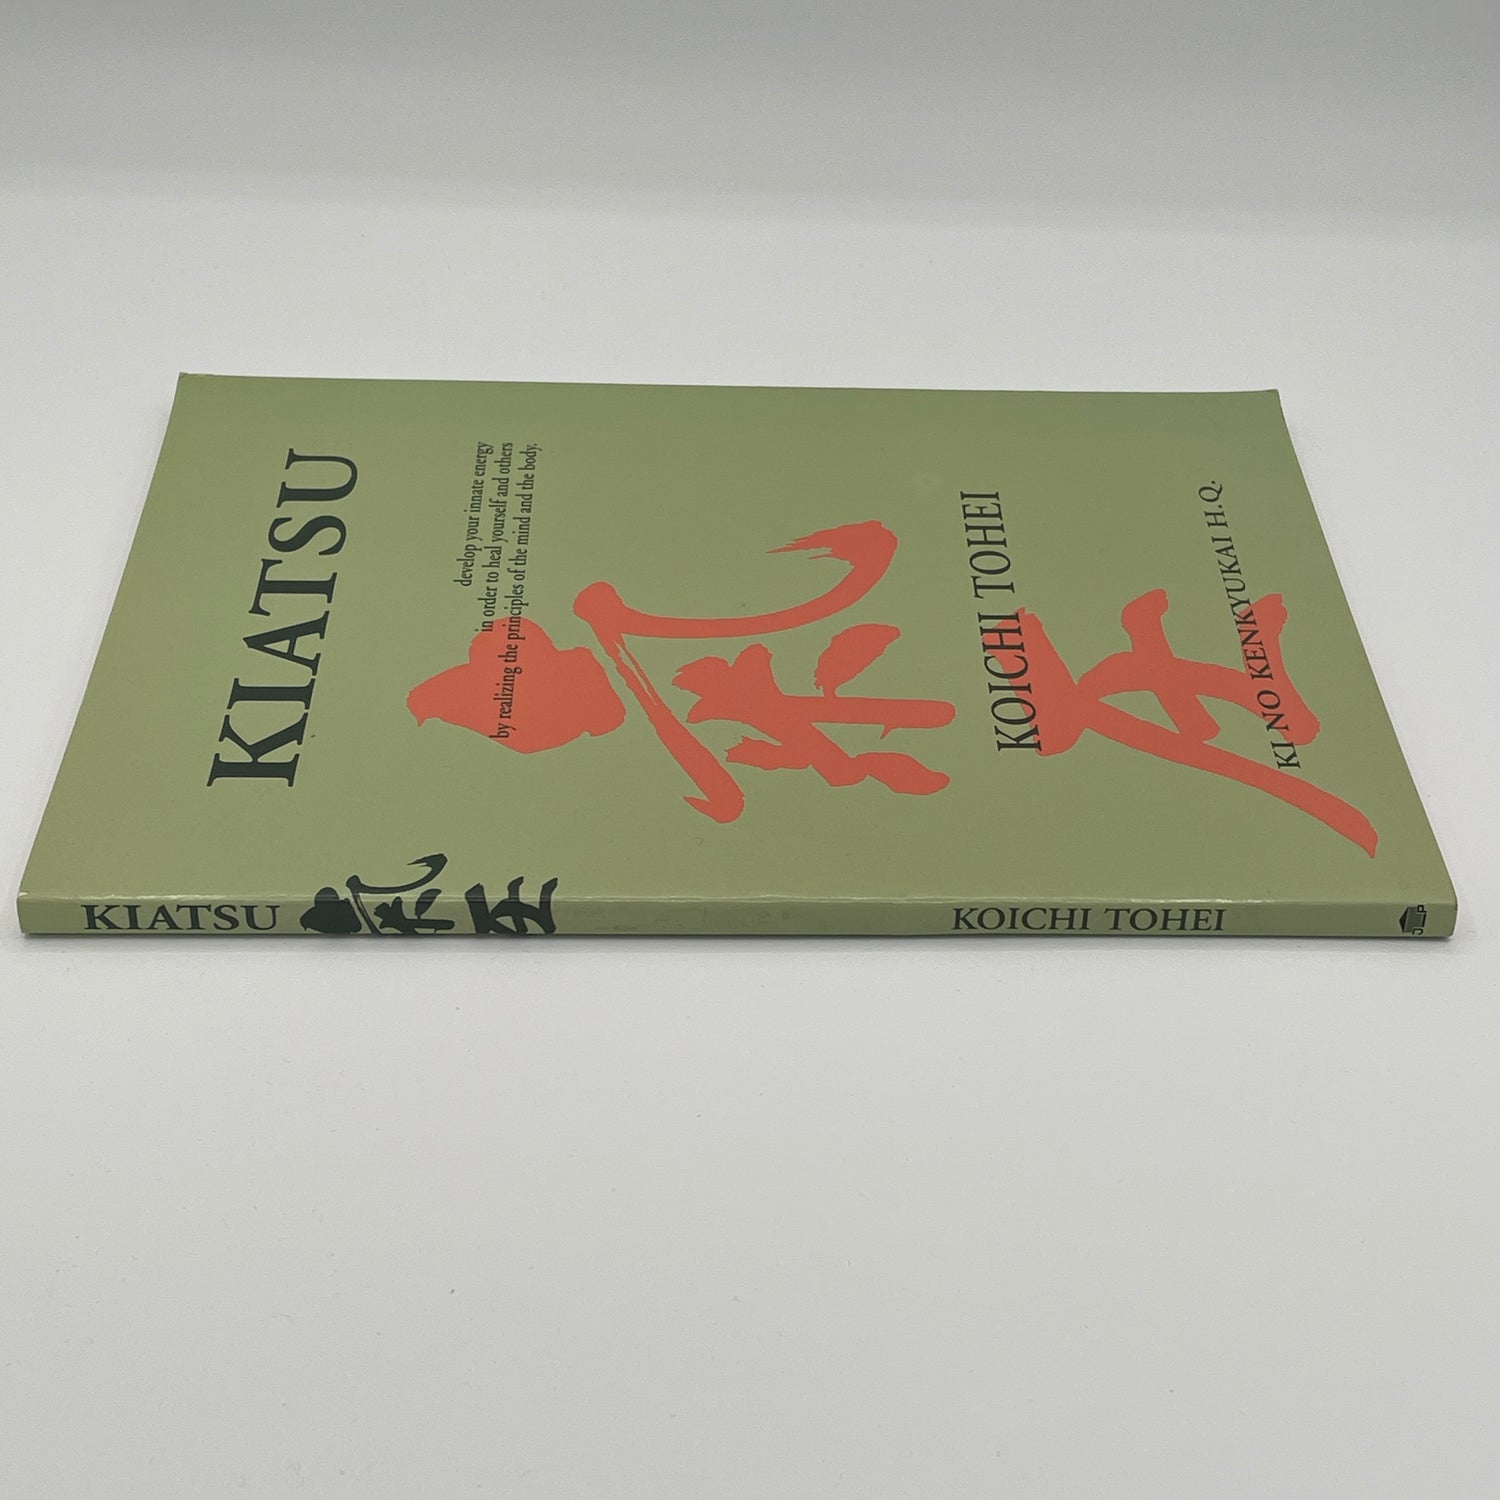 Kiatsu Massage Book (Revised Edition) By Koichi Tohei (Preowned)